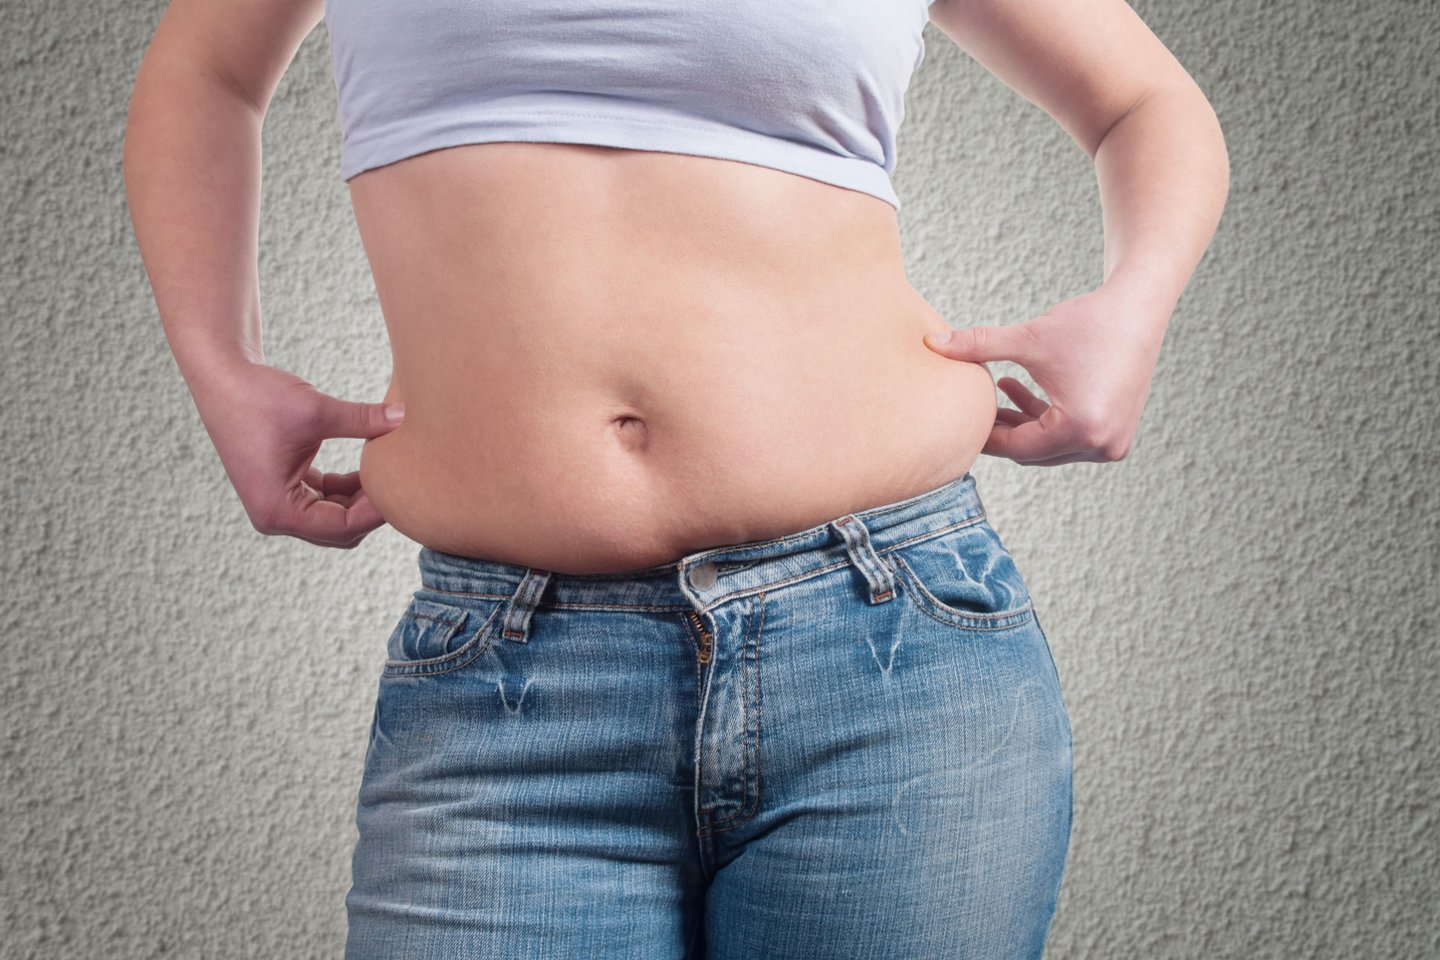 daugiau kaip 50 kaip numesti pilvo riebalus beviltiškai numesti svorio prašome padėti